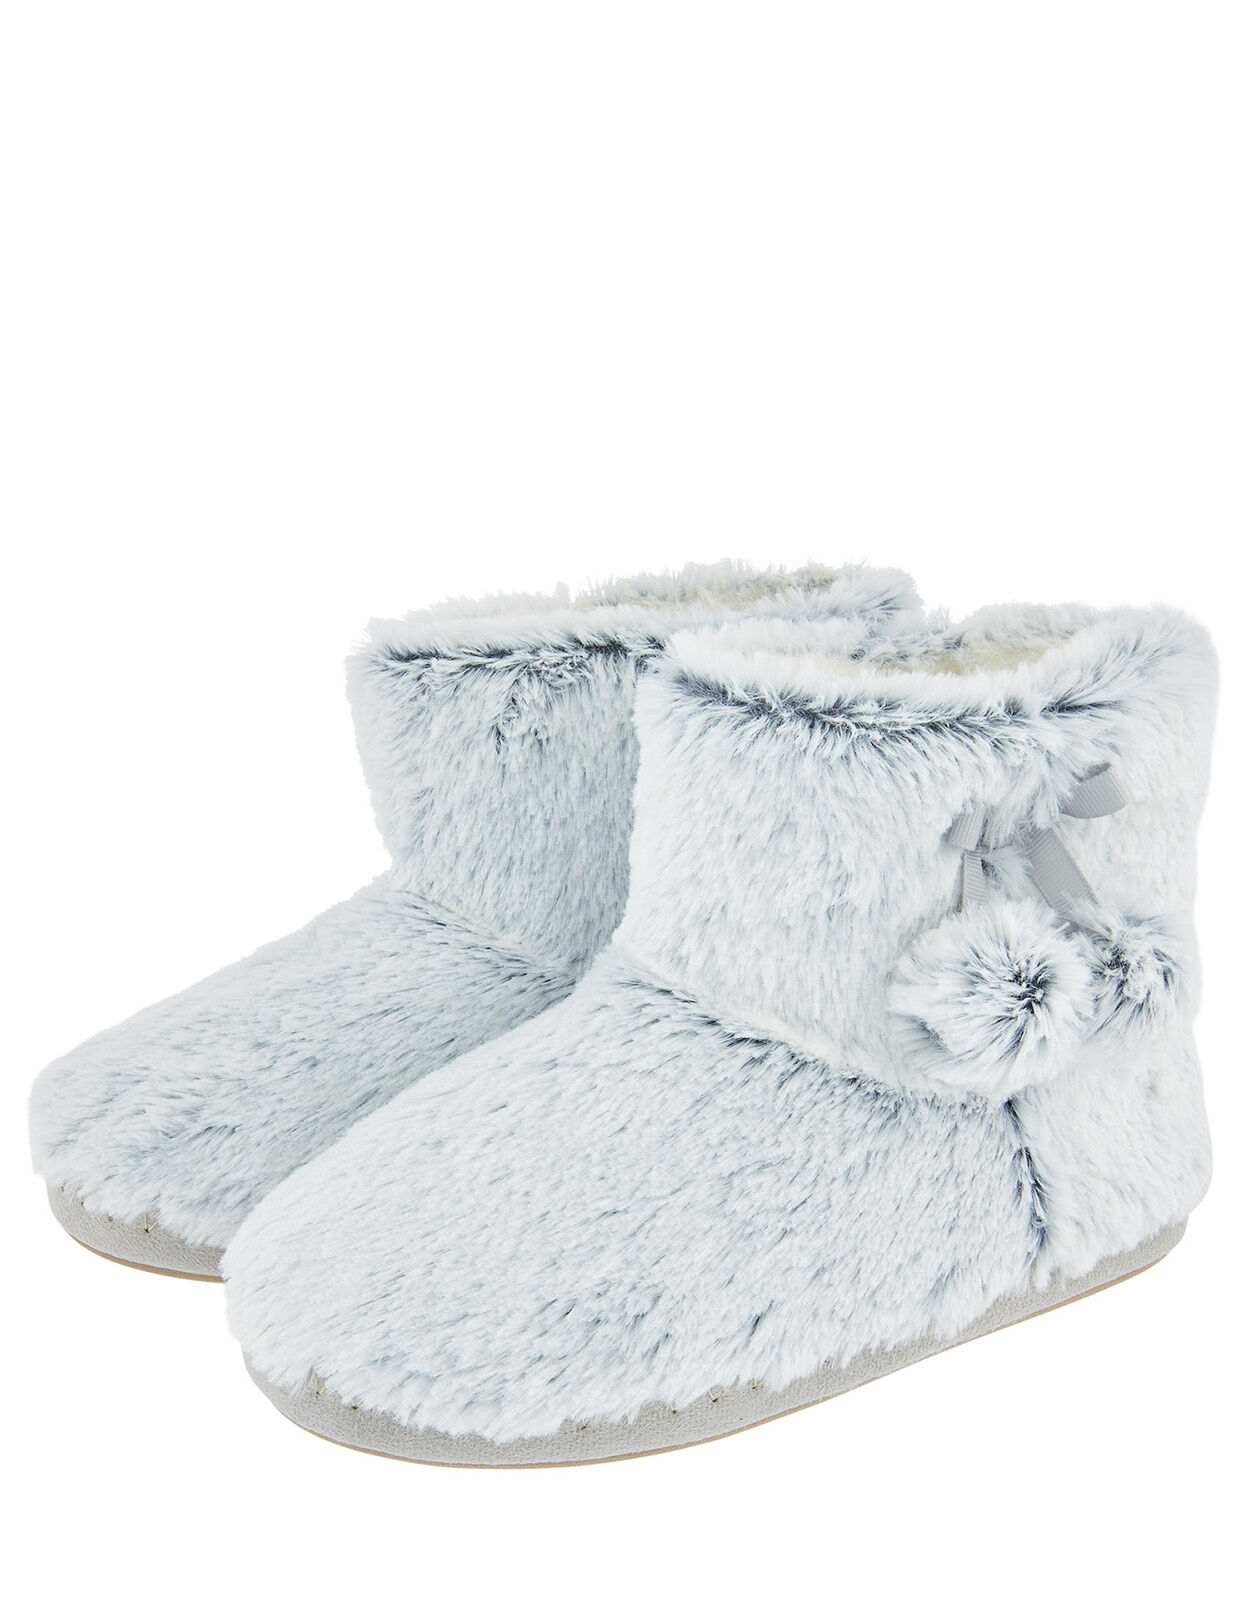 Fluffy Pom-Pom Slipper Boots Grey 